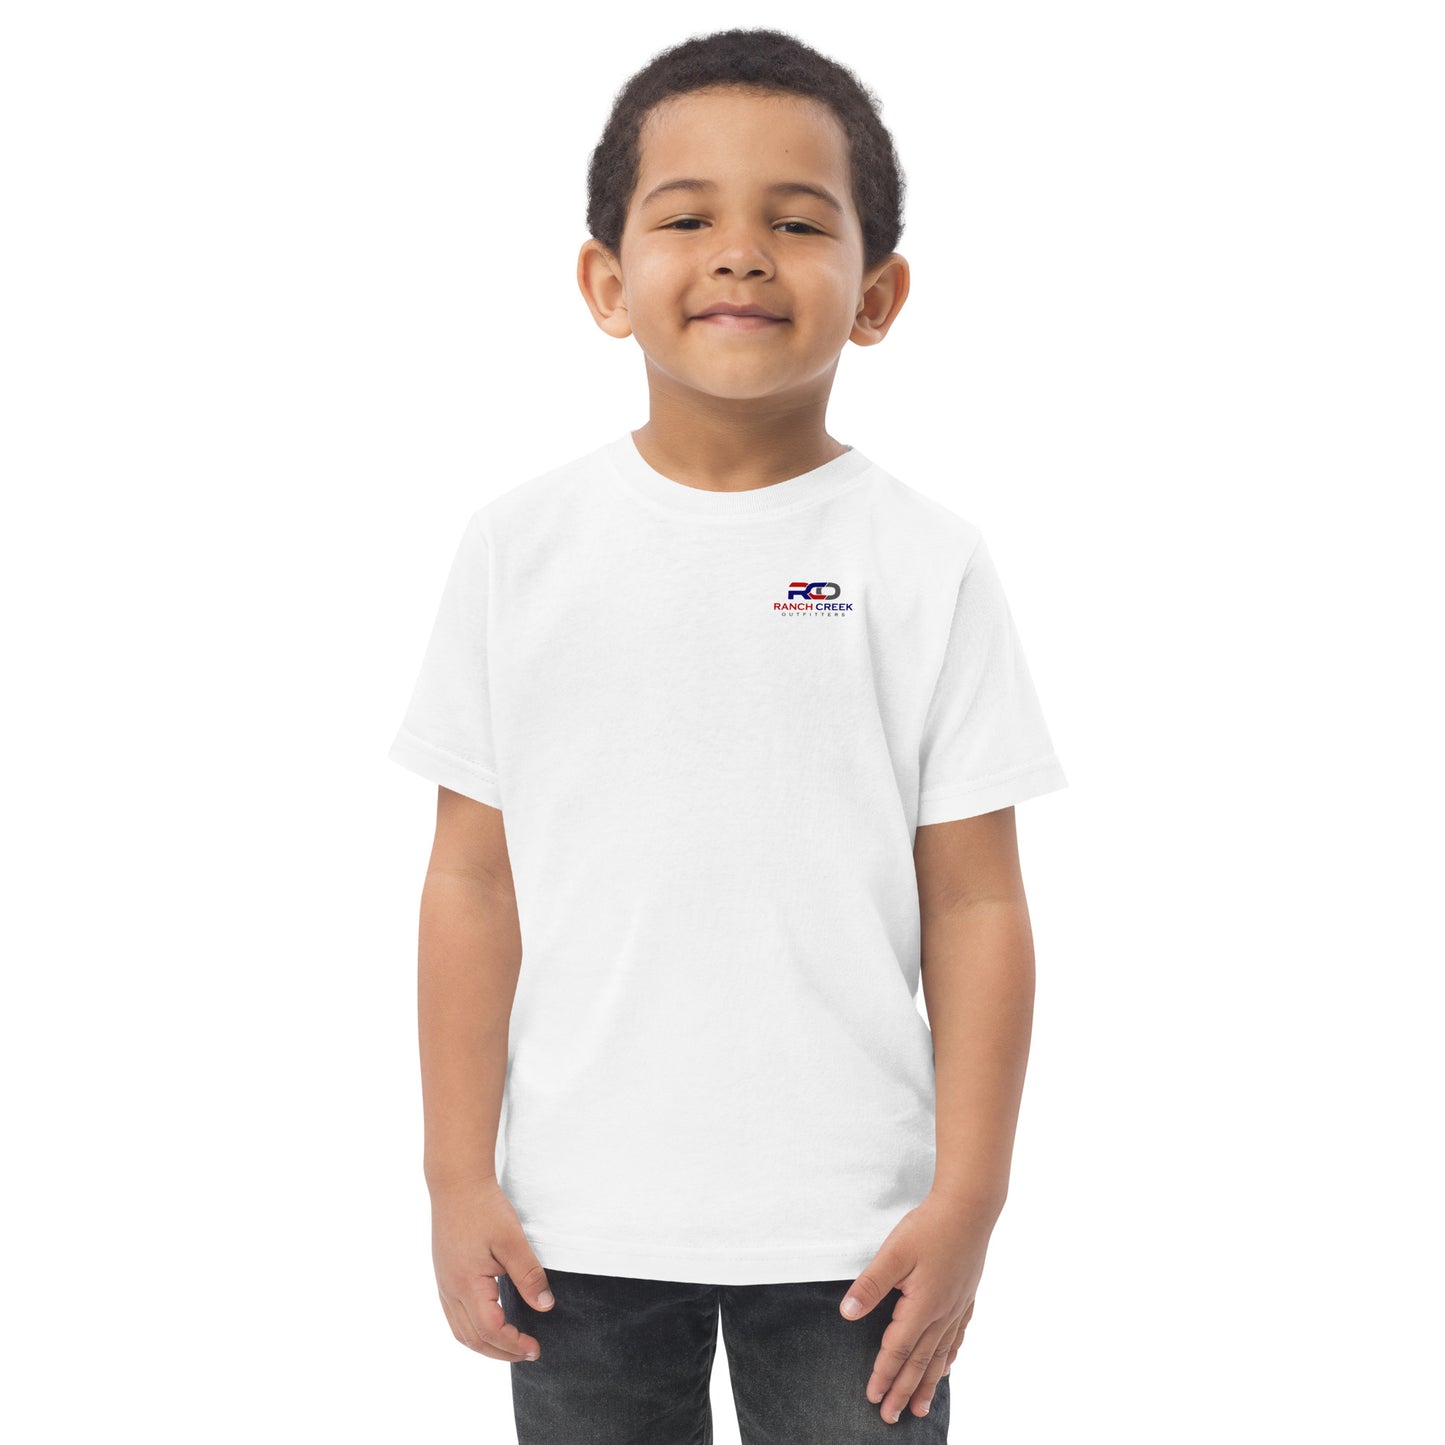 Toddler Dozer jersey t-shirt